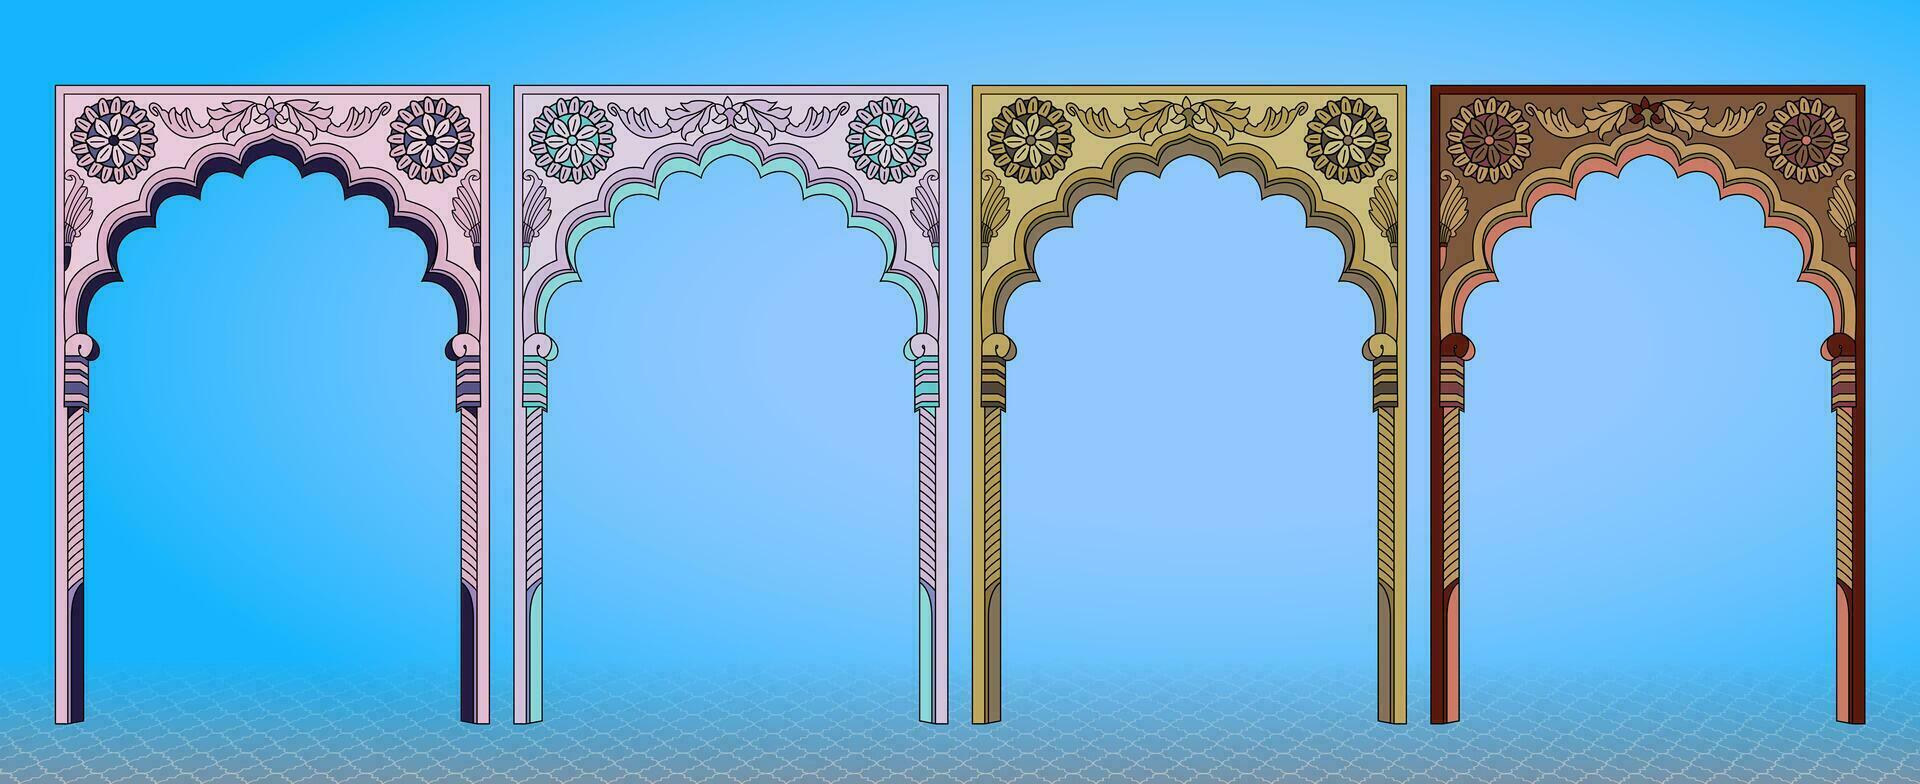 tradicional indio Mughal arquitectura elementos. lata ser usado en Boda tarjetas, saludos, y invitaciones vector ilustración